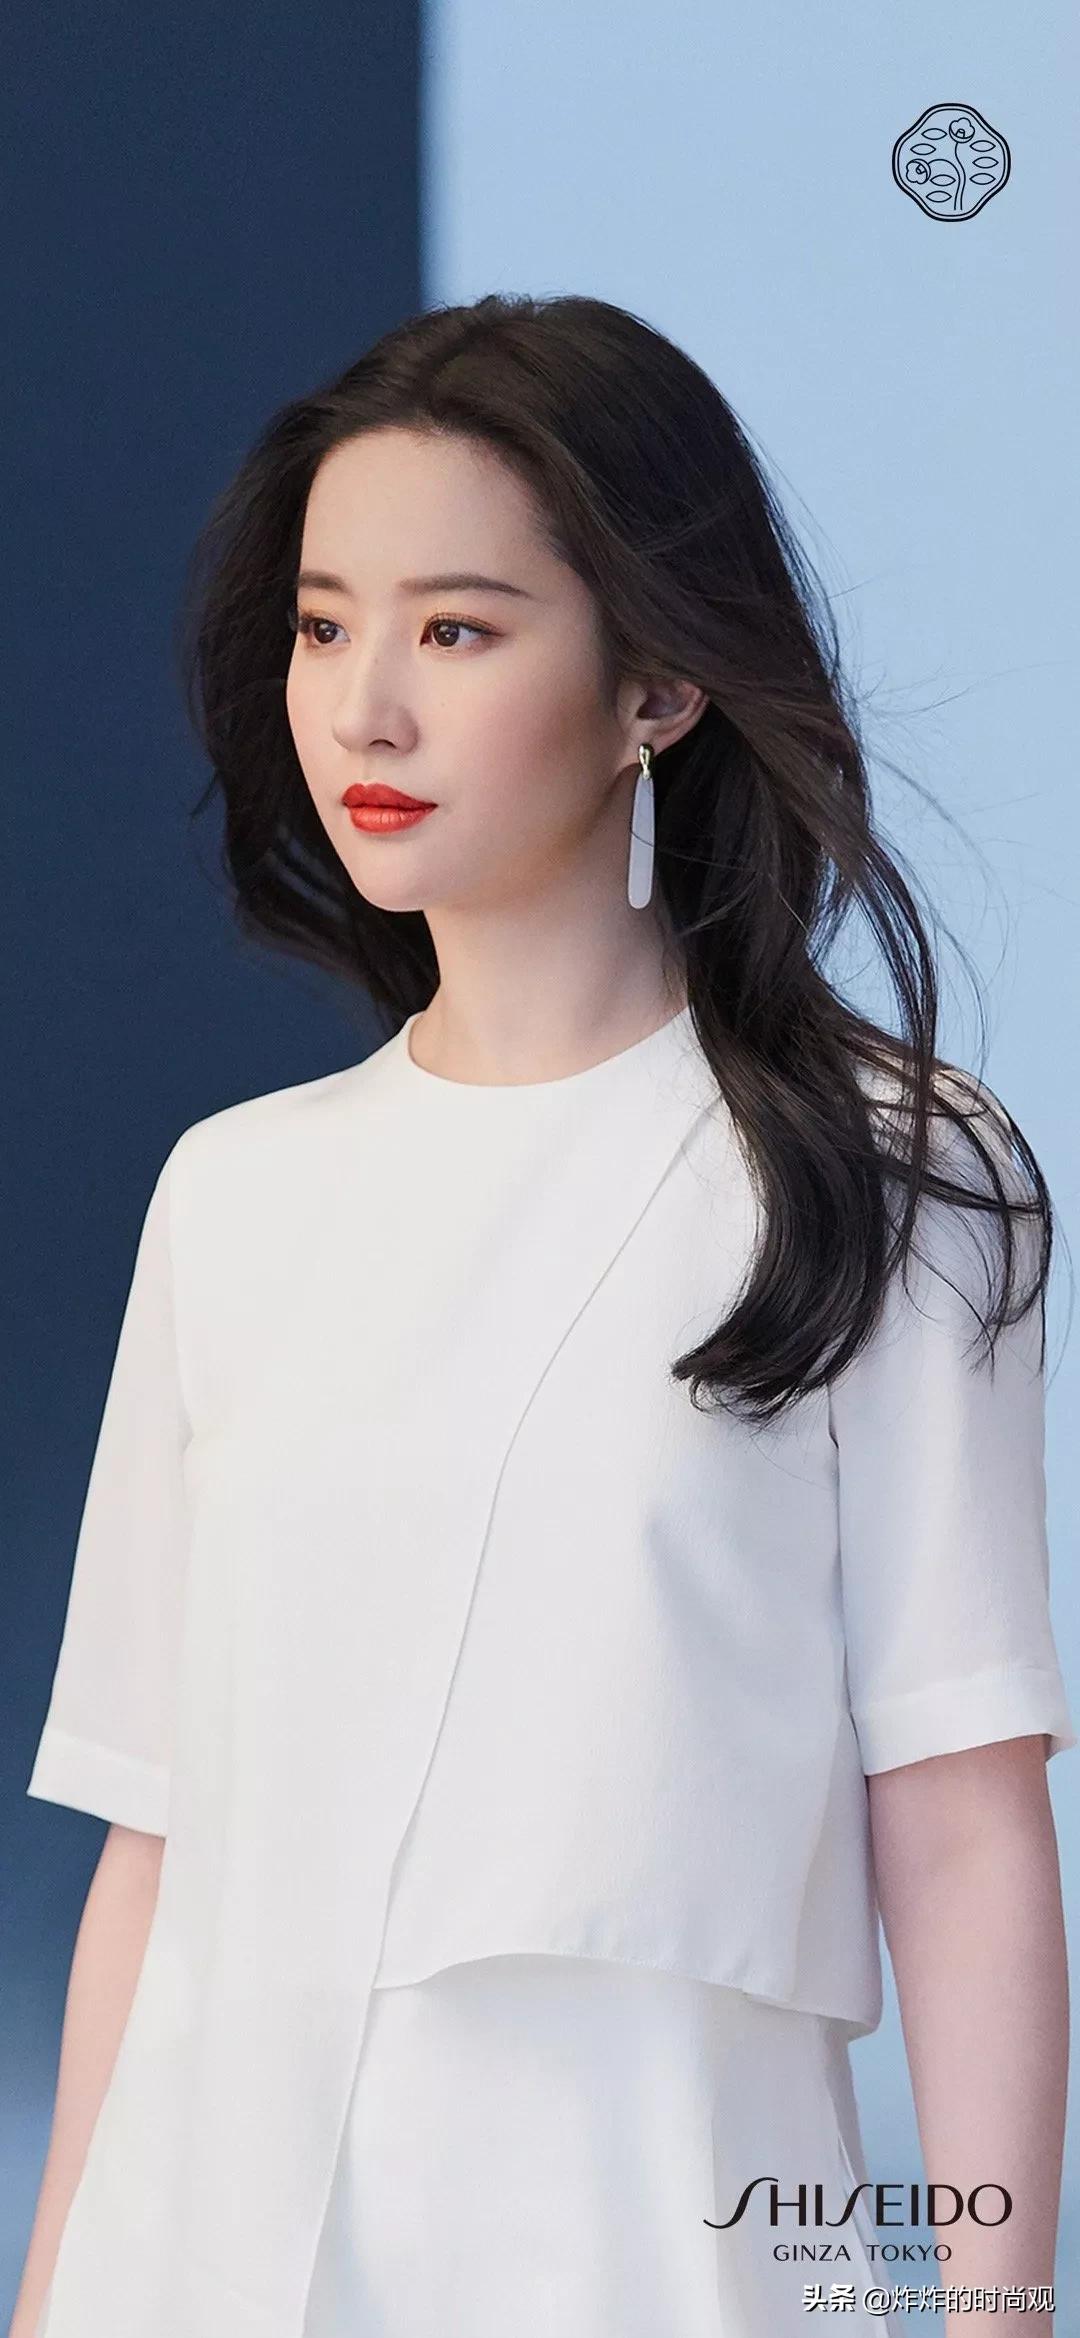 刘亦菲成为shiseido资生堂品牌全球代言人,身穿白色连衣裙,是仙女下凡